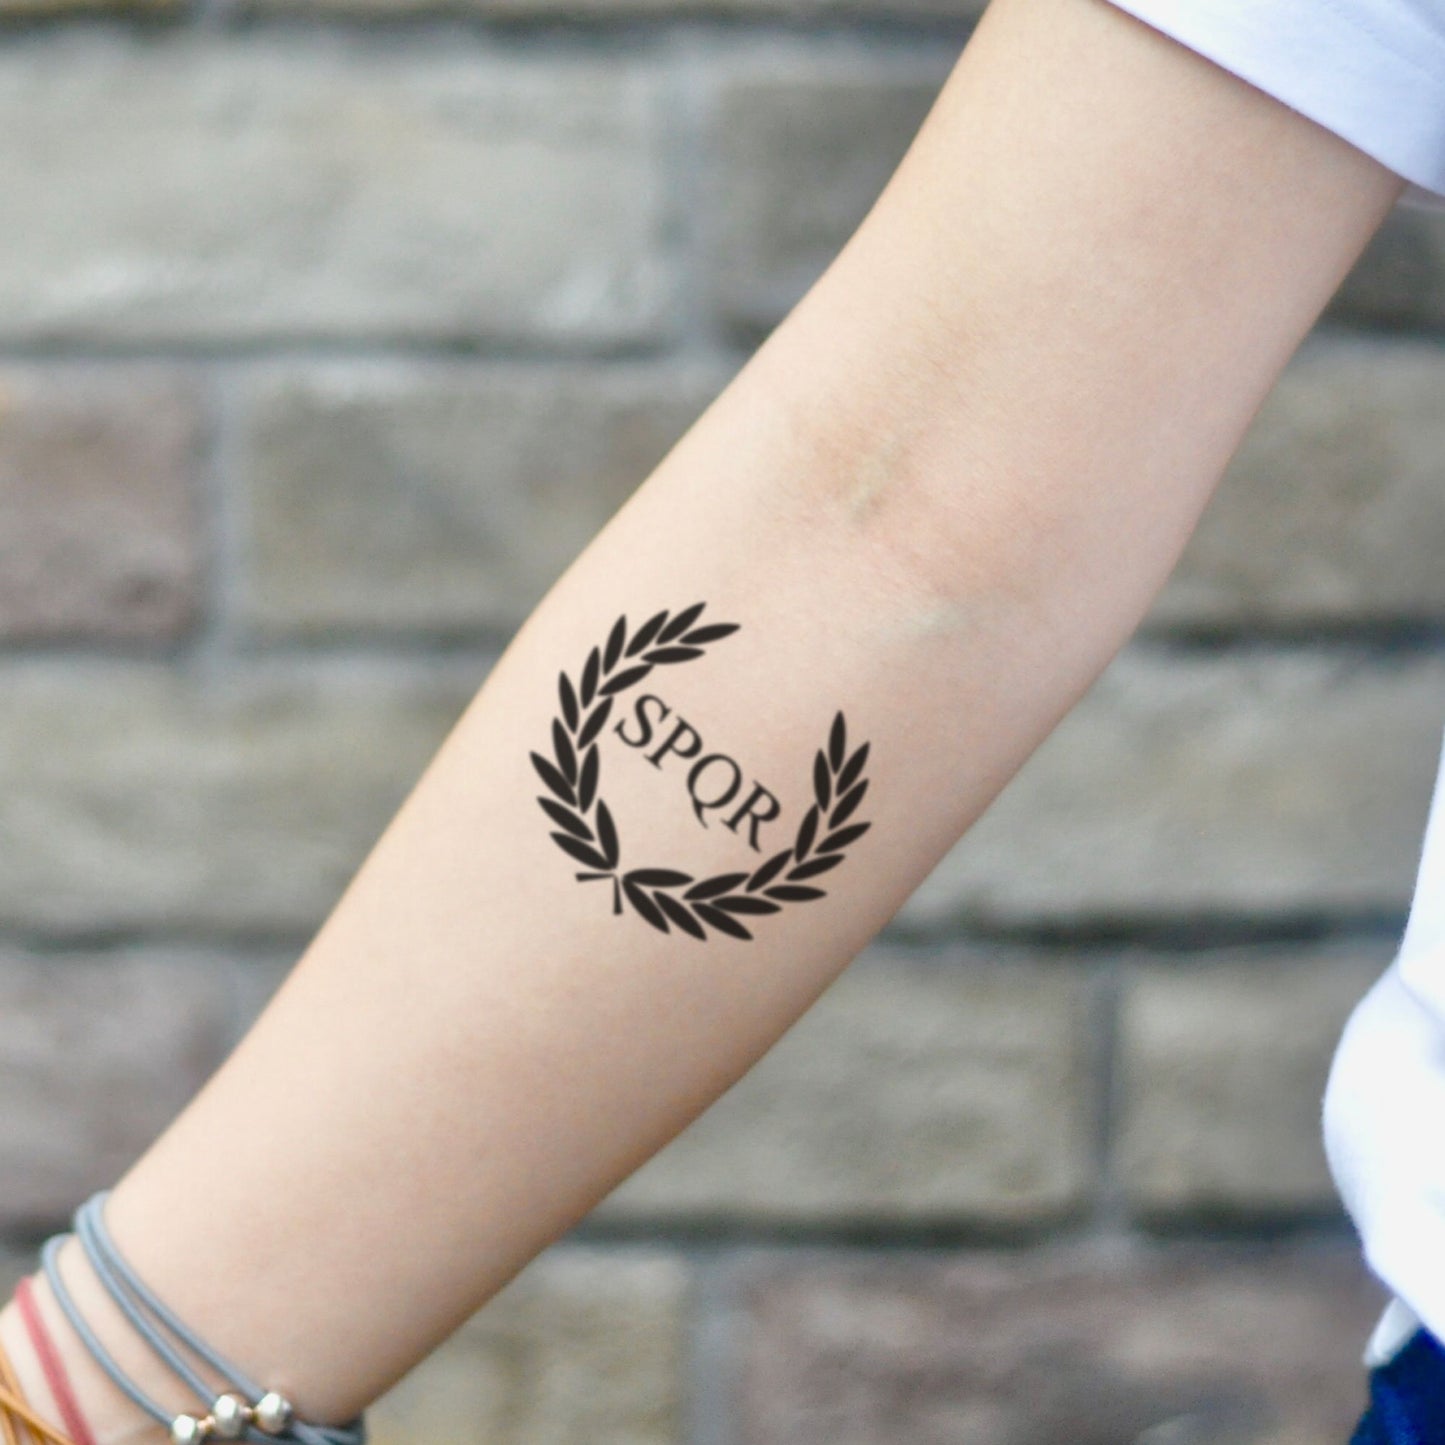 fake small camp jupiter spqr illustrative temporary tattoo sticker design idea on inner arm